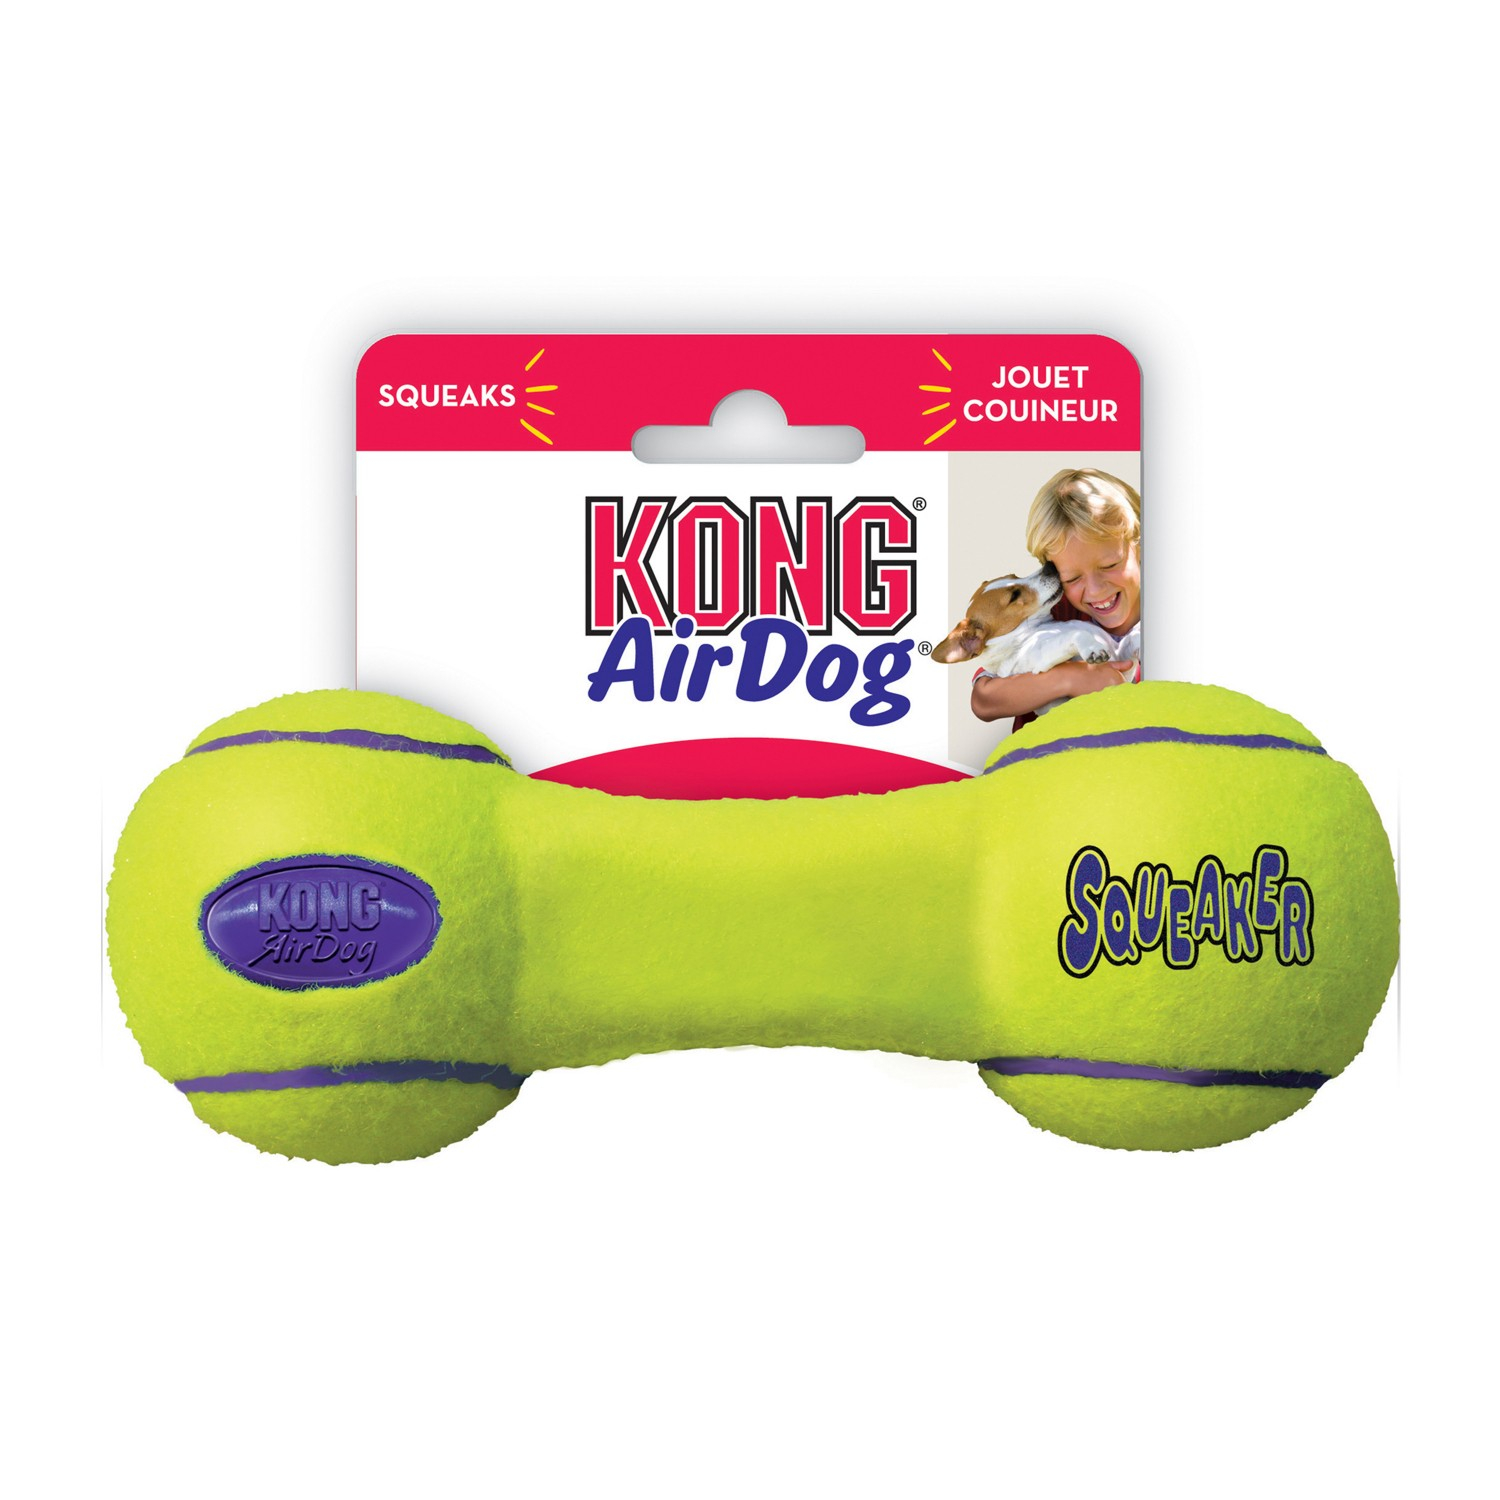 KONG Squeaker Dumbbell 3 tailles - jouet chien toutes tailles - rebondissant et sonore